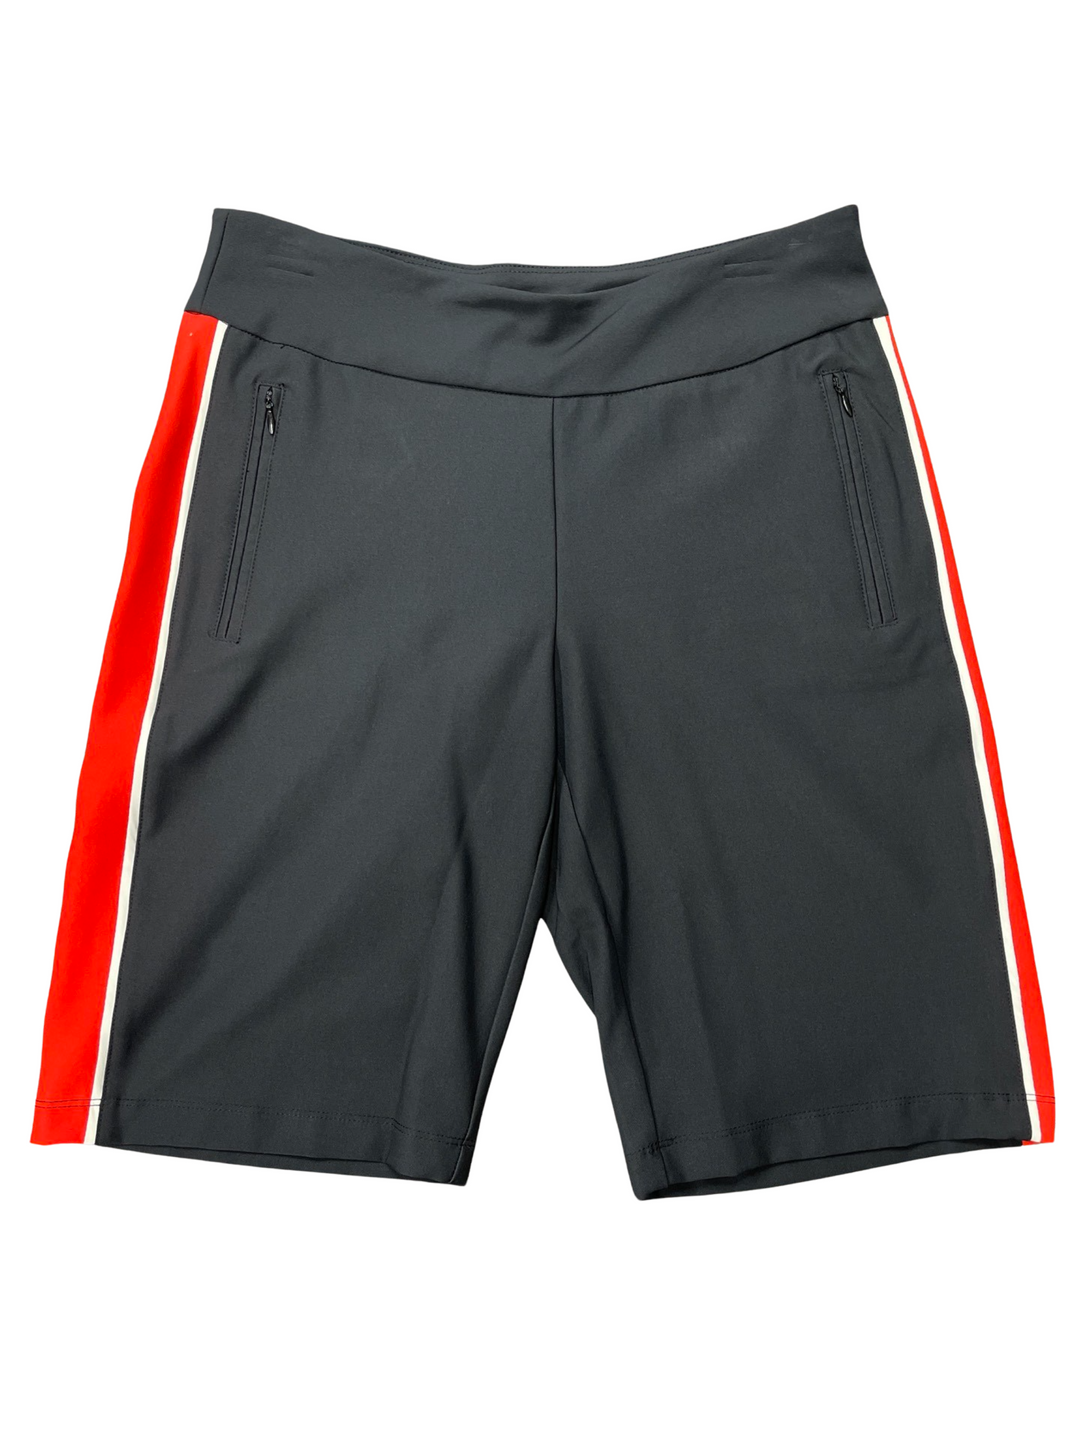 Tail Short - Black/Red - Size 8 - Skorzie